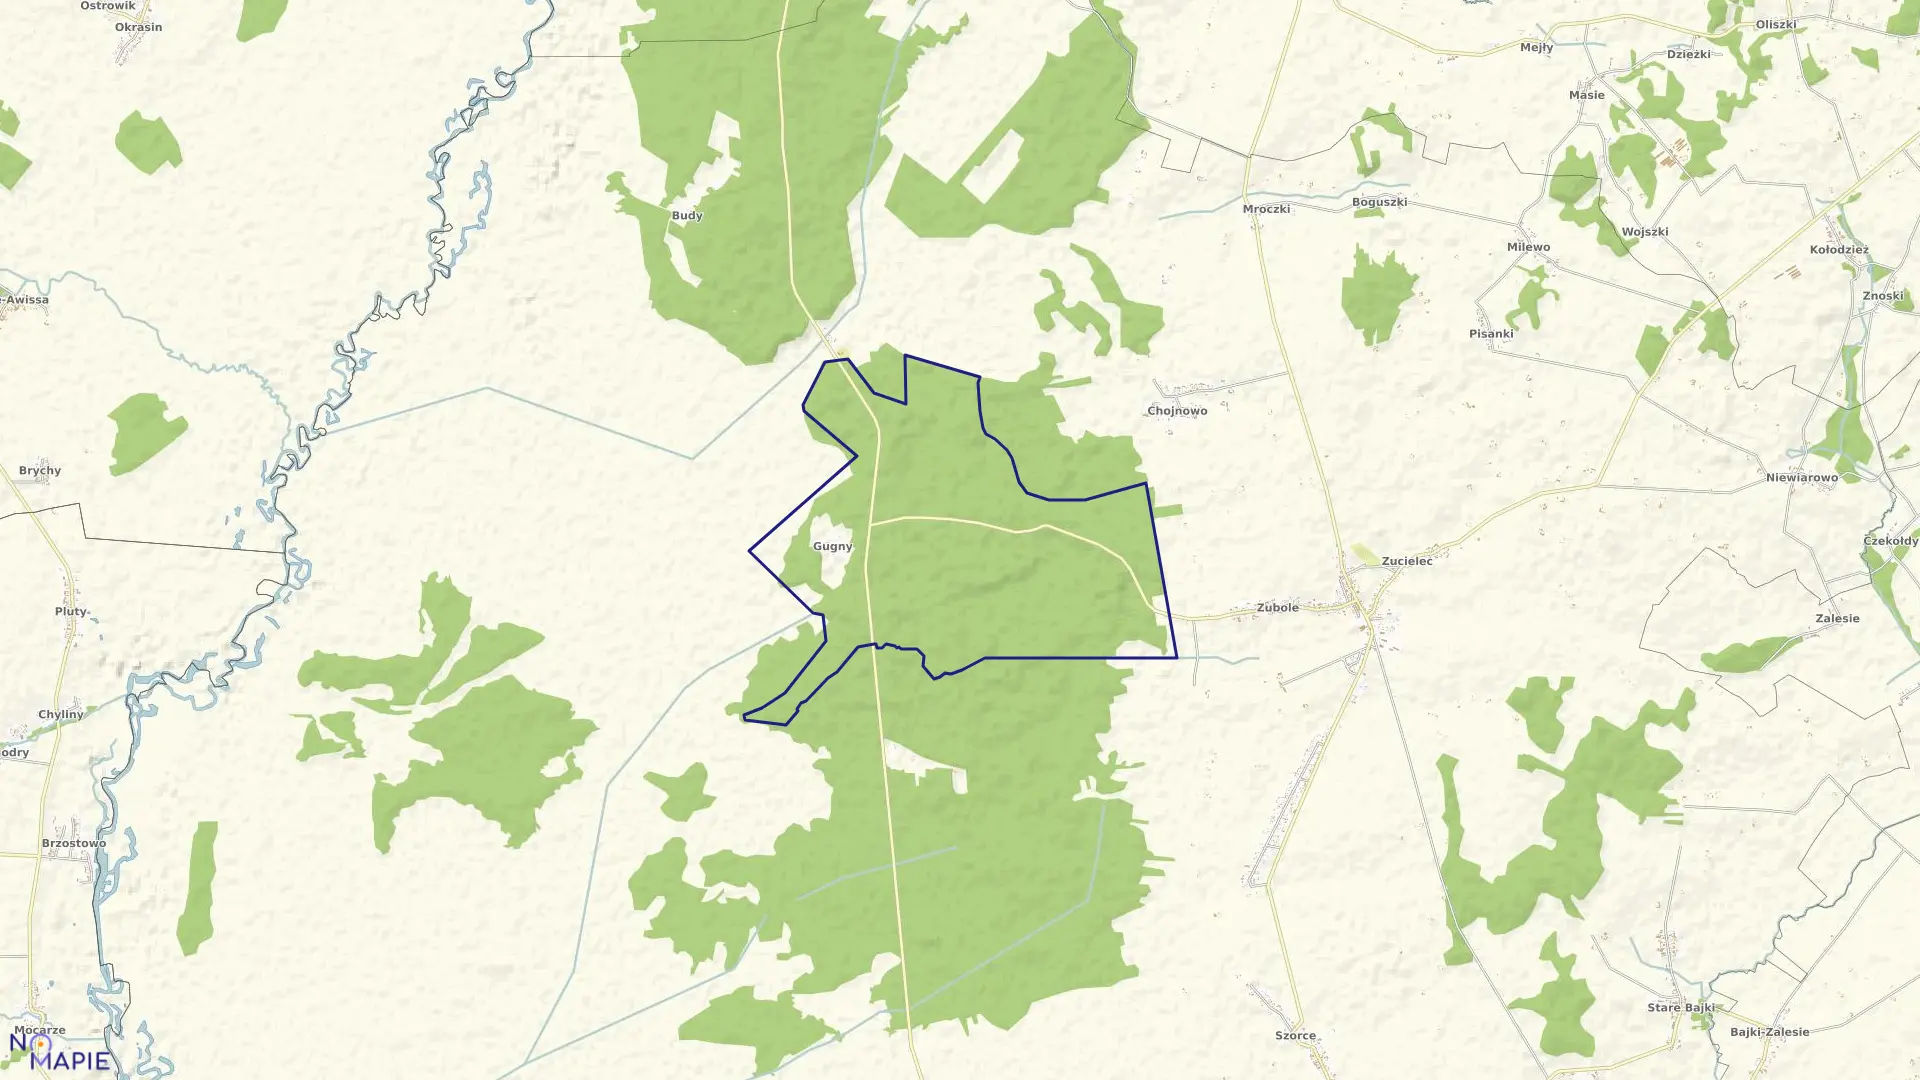 Mapa obrębu GUGNY w gminie Trzcianne